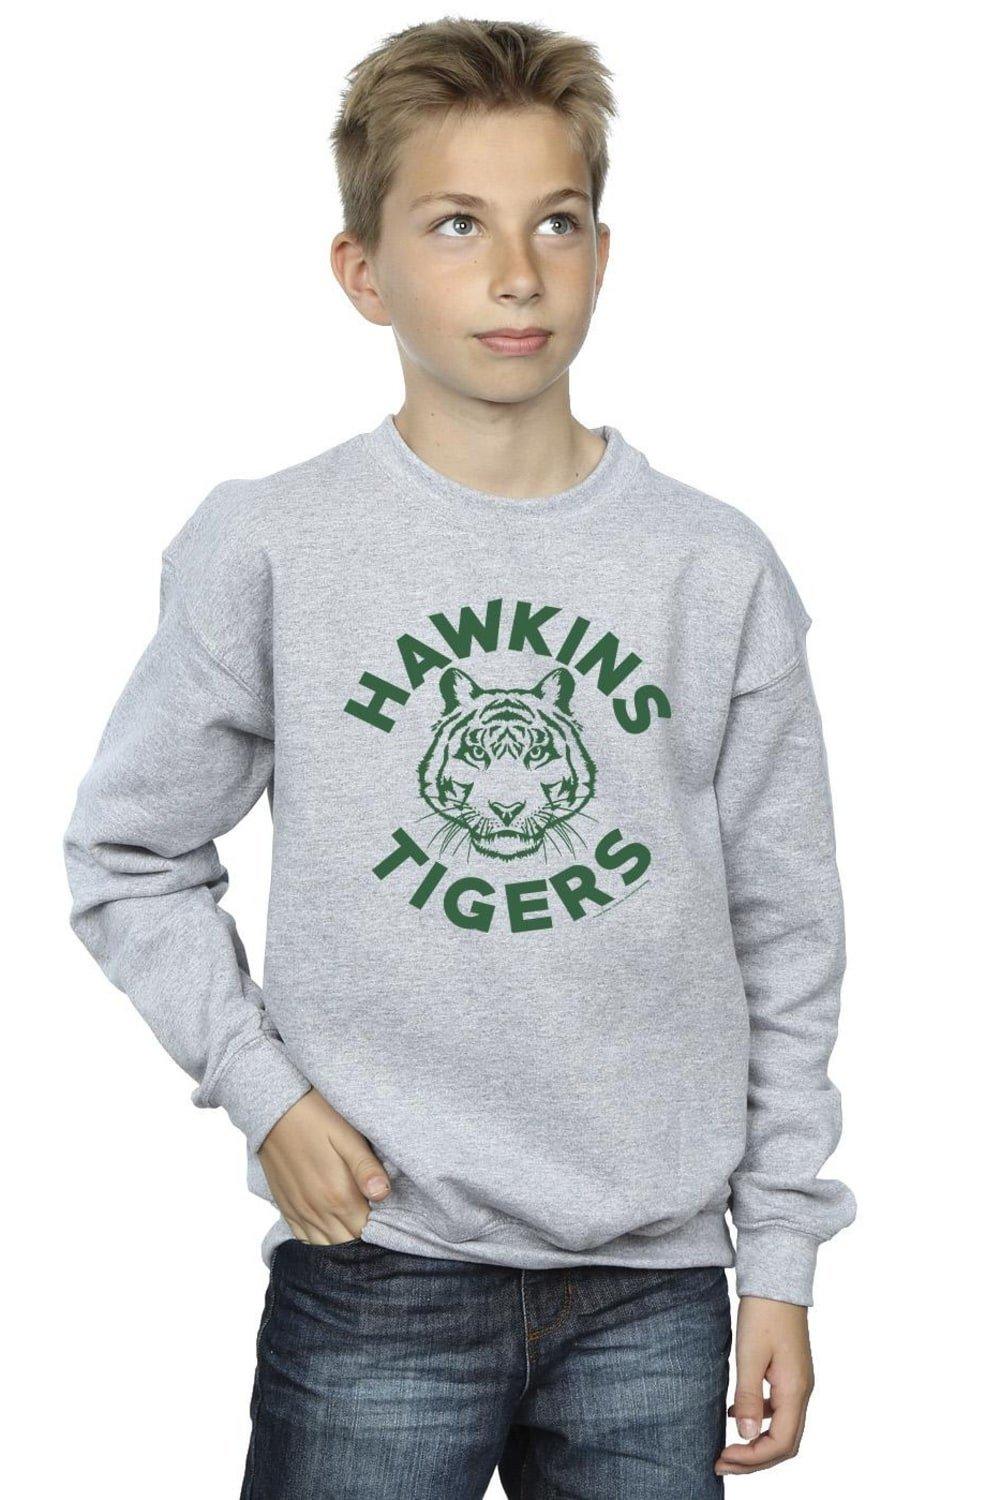 Stranger Things Hawkins Tigers Sweatshirt